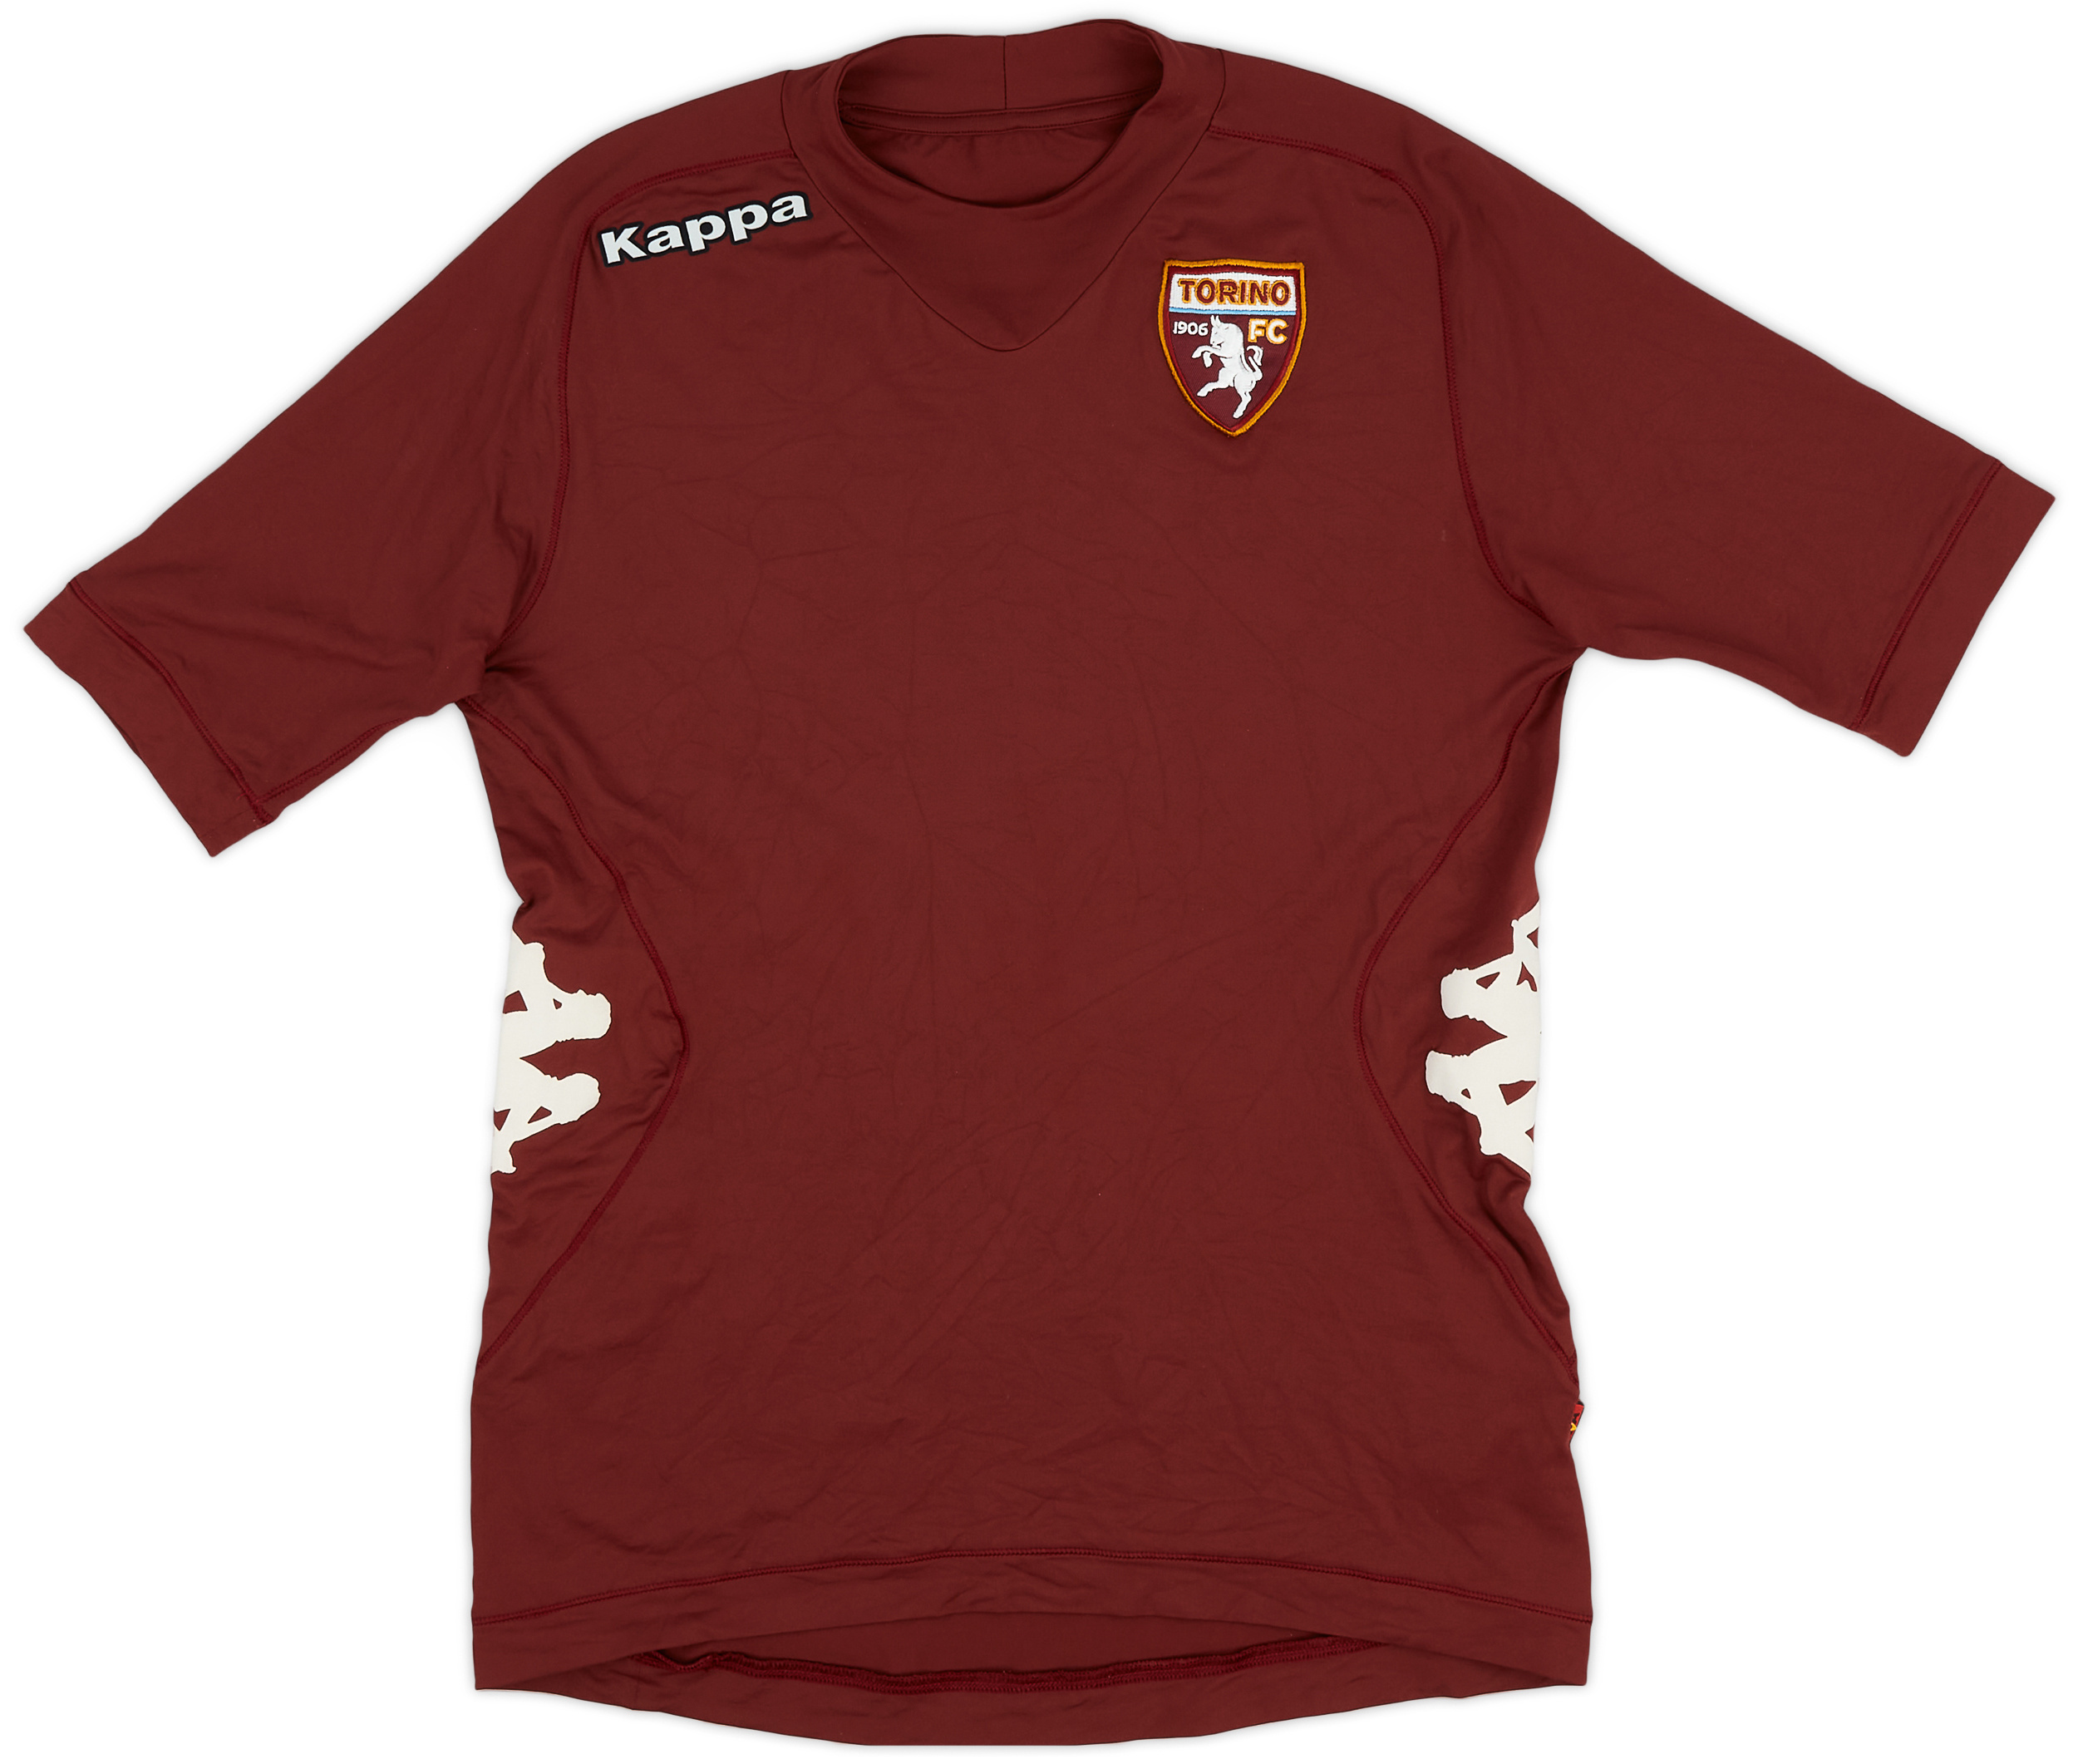 2012-13 Torino Home Shirt - 9/10 - ()